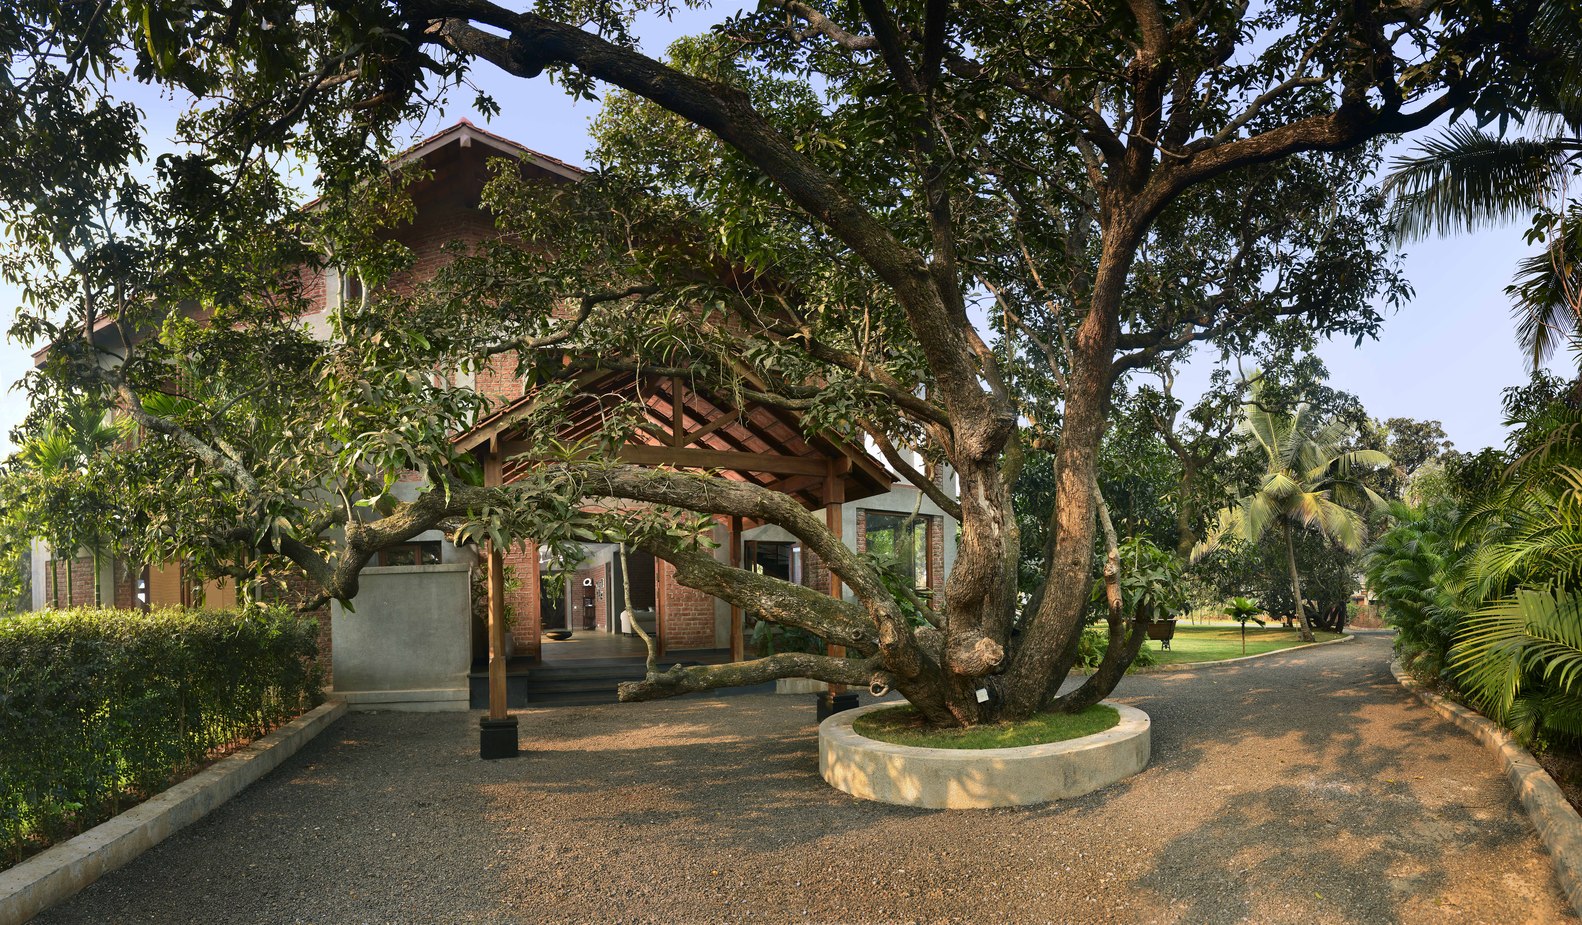 architecture sobre minimale materiaux bruts allée vers la maison arbre végétation ne faire qu'un avec la nature